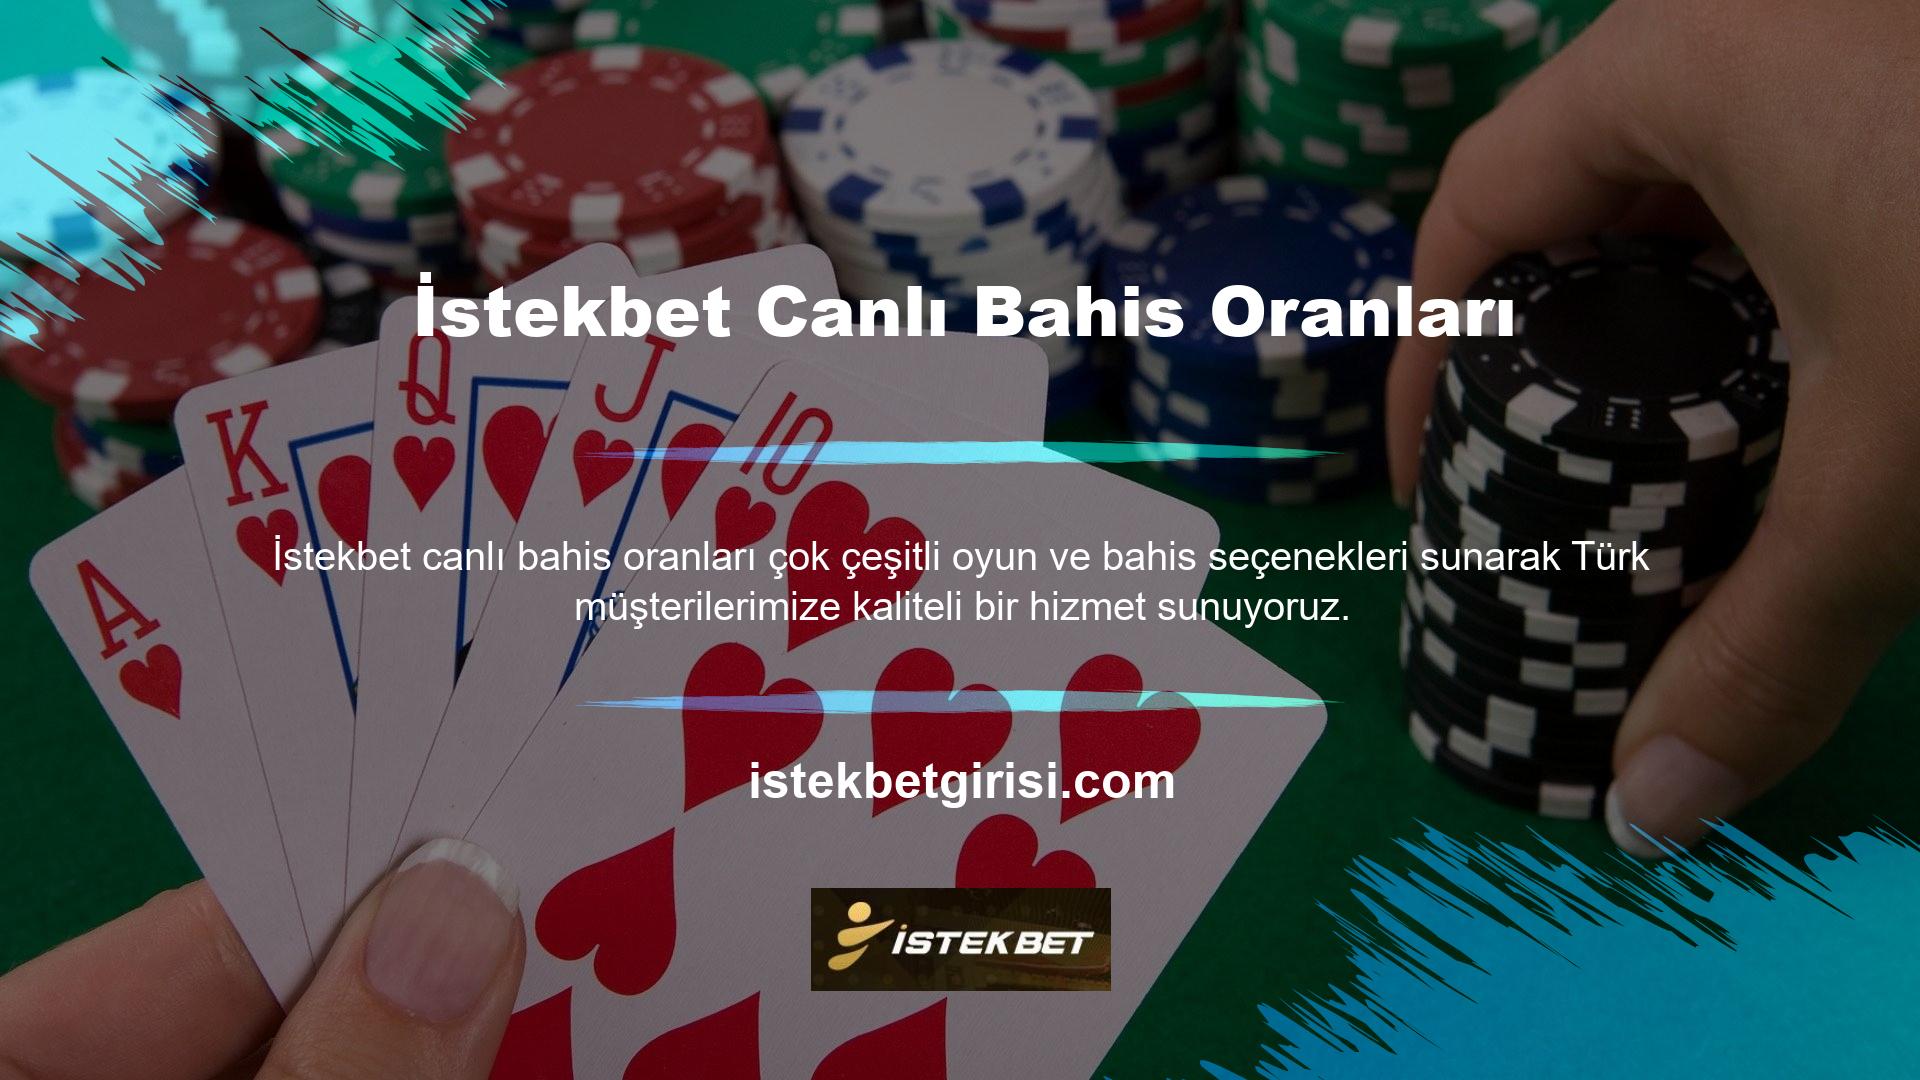 Slot, poker, rulet, casino, canlı casino, oyunlar ve slot kategorilerinde akla gelen tüm ürünler ve Türkiye sınırları içerisinde akla gelen birçok İstekbet canlı bahis oyun seçeneği